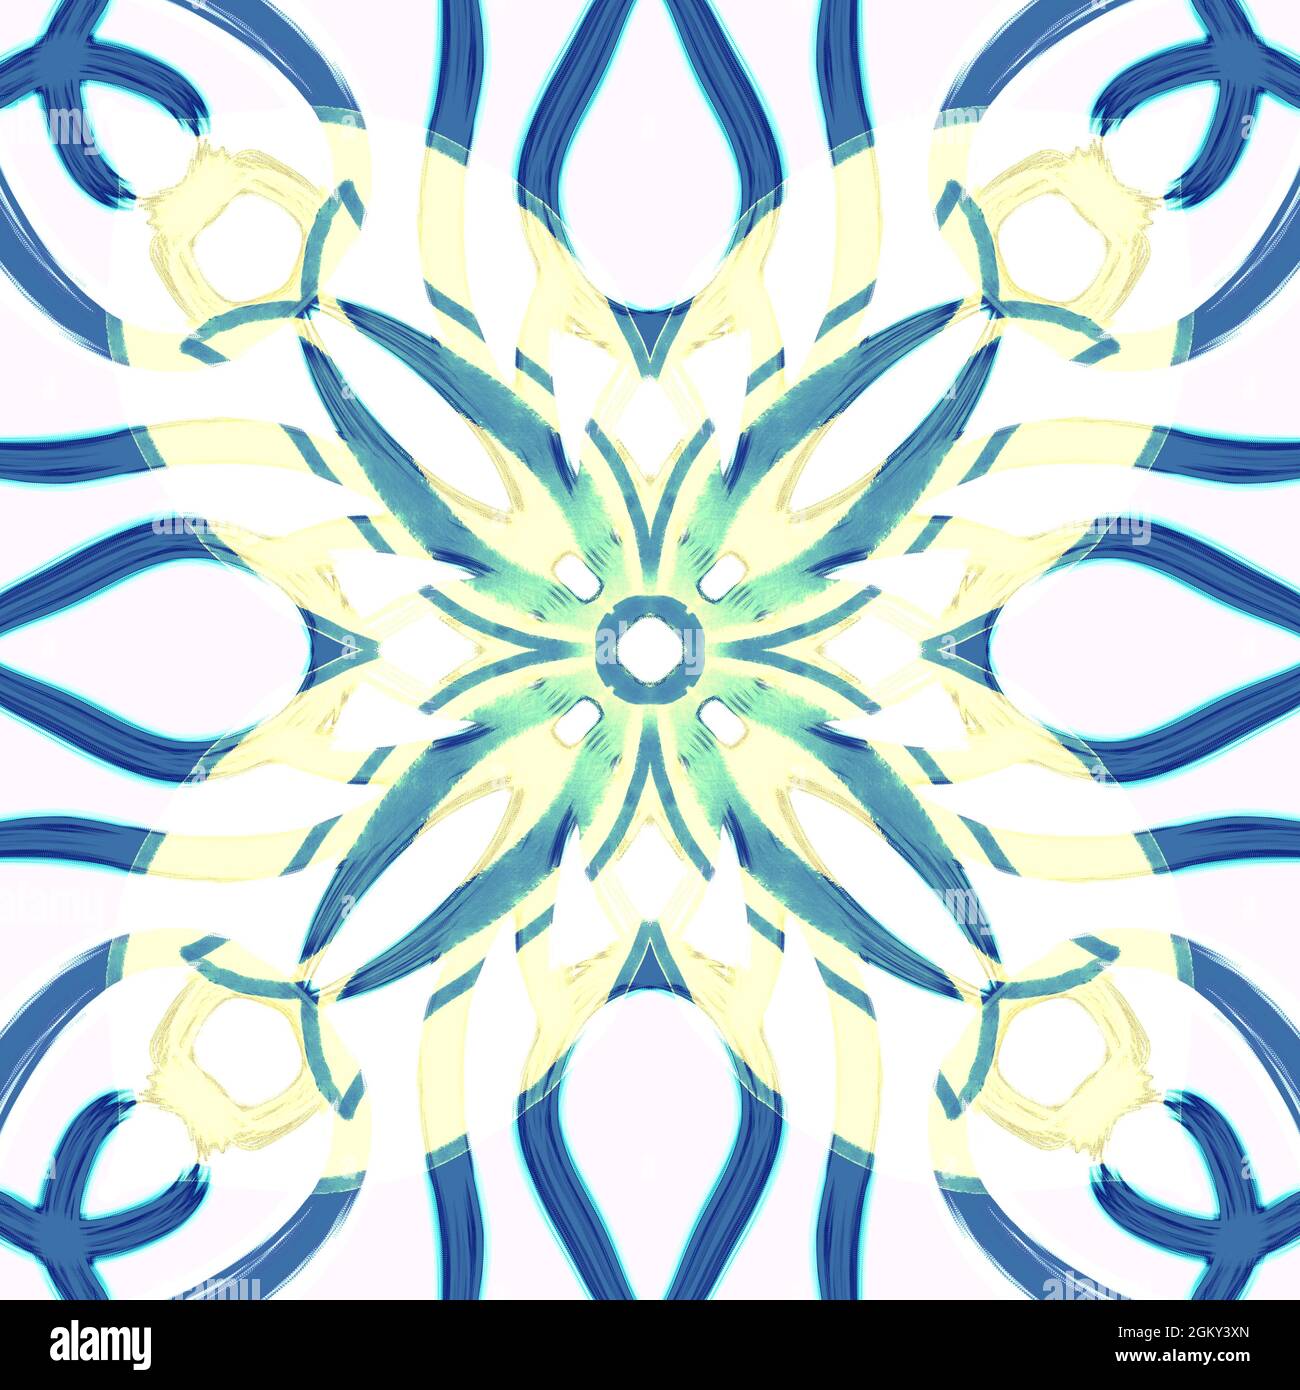 Nahtloses, geometrisches Muster mit Blumenmuster in lebendigen Farben, die sich symmetrisch wiederholen. Verwenden Sie für Modedesign, Heimtextilien, Tapeten. Stockfoto